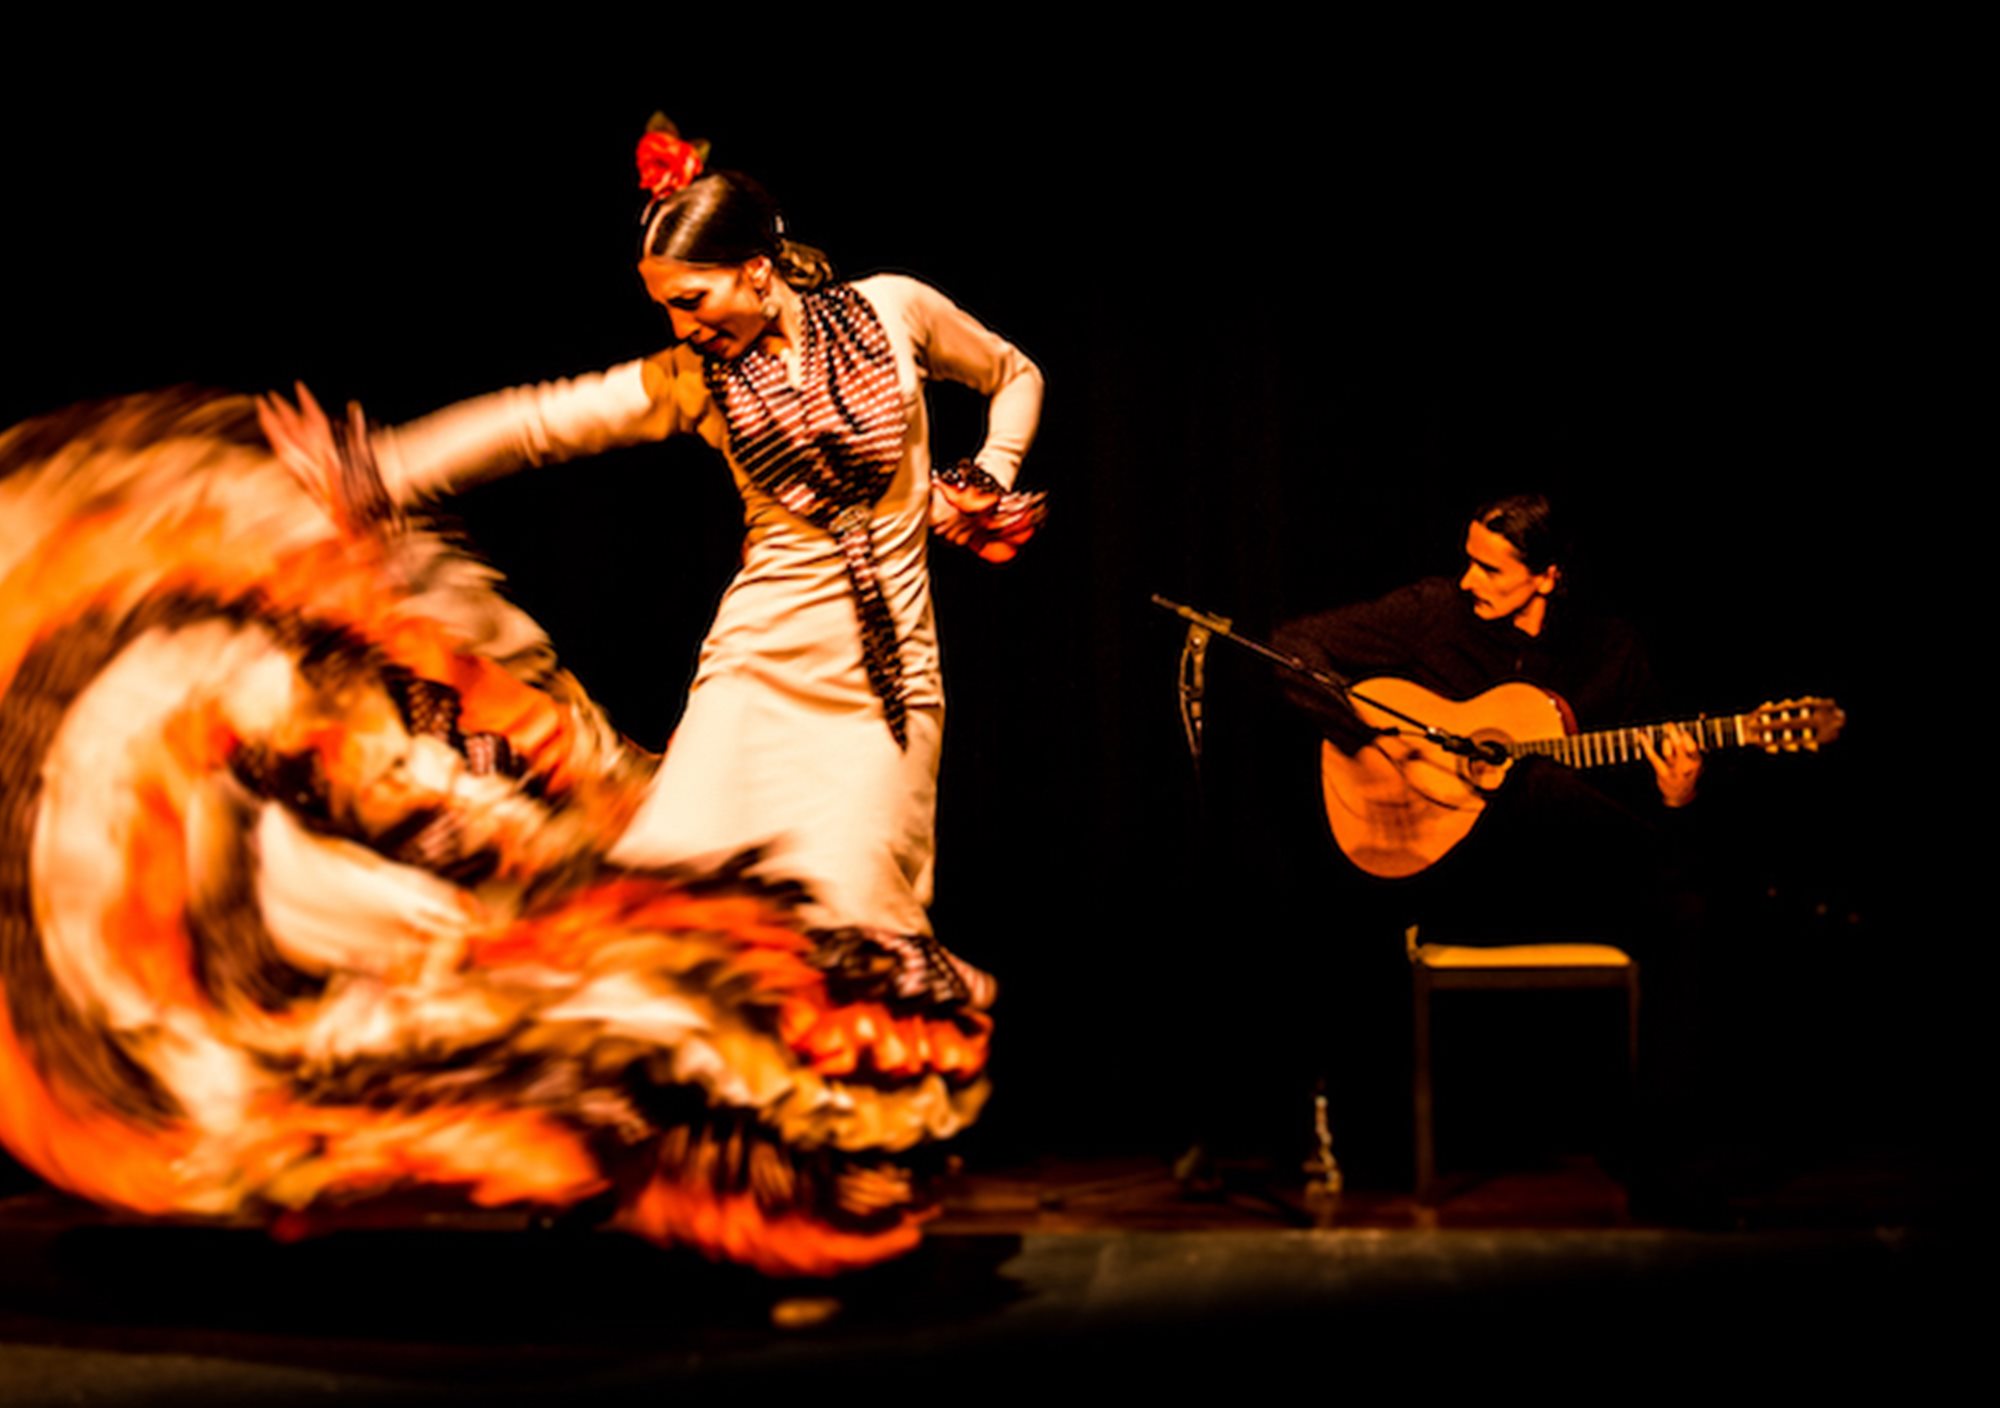 réserver acheter réservations billets tours visites en ligne tickets online spectacle flamenco La Cueva de Lola Madrid